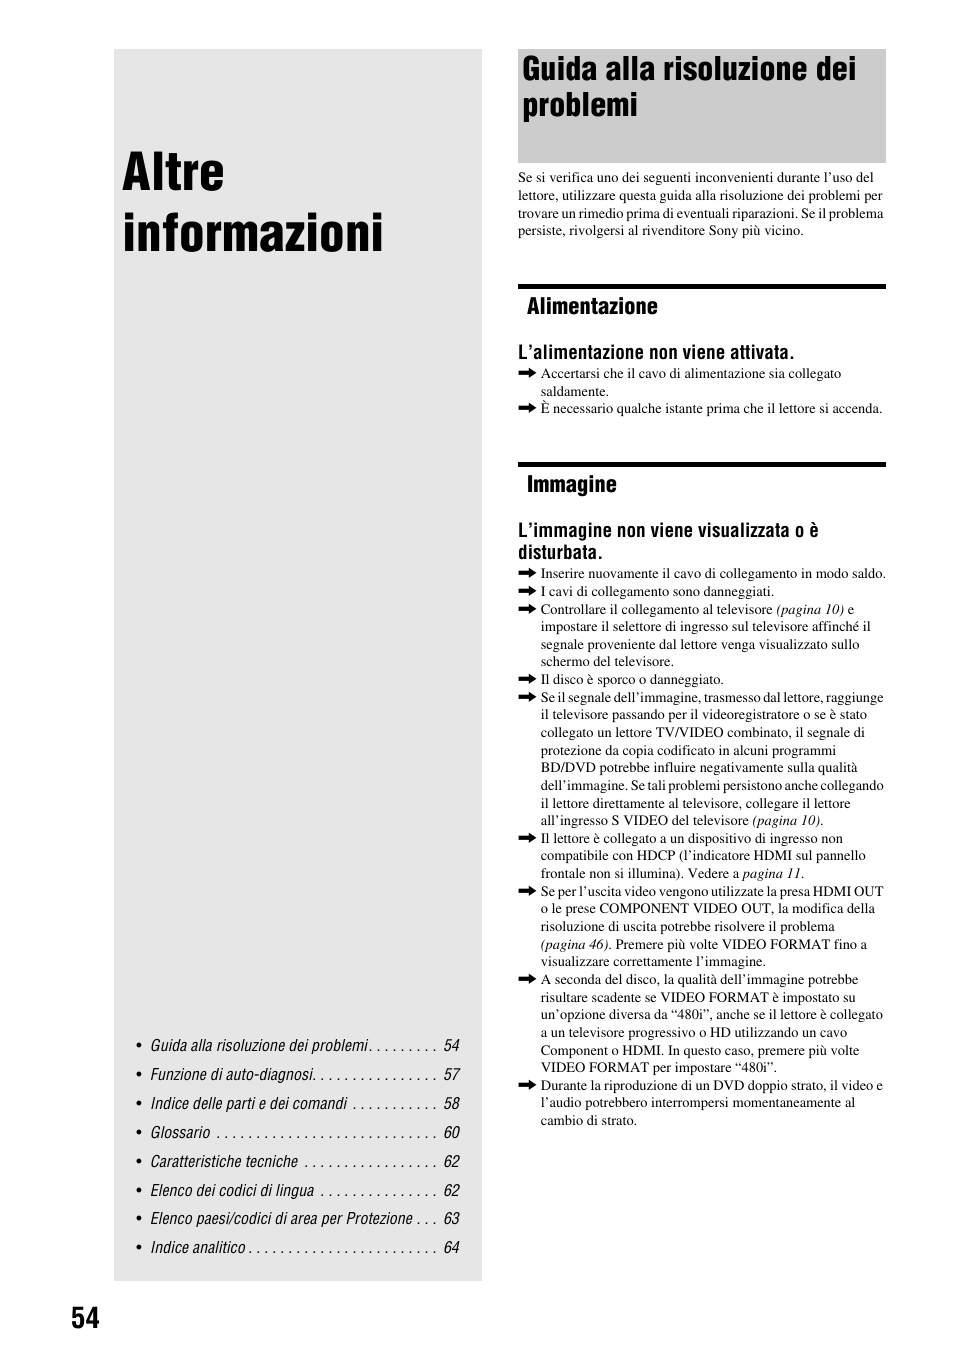 Altre informazioni, Guida alla risoluzione dei problemi, Alimentazione | Immagine | Sony BDP-S300 Manuale d'uso | Pagina 54 / 67